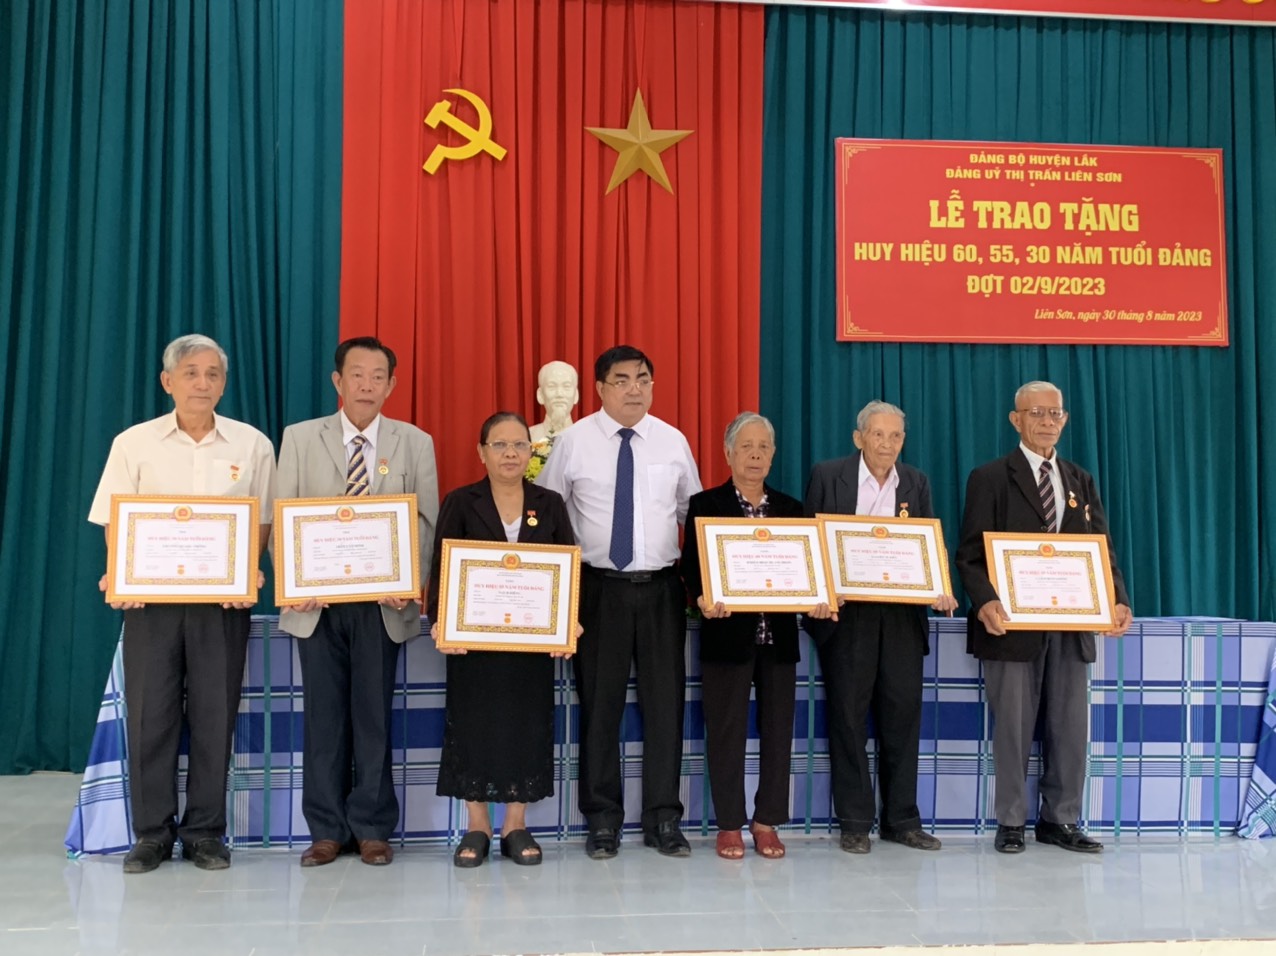 Đảng bộ huyện Lắk trao tặng Huy hiệu Đảng đợt 02/9/2023